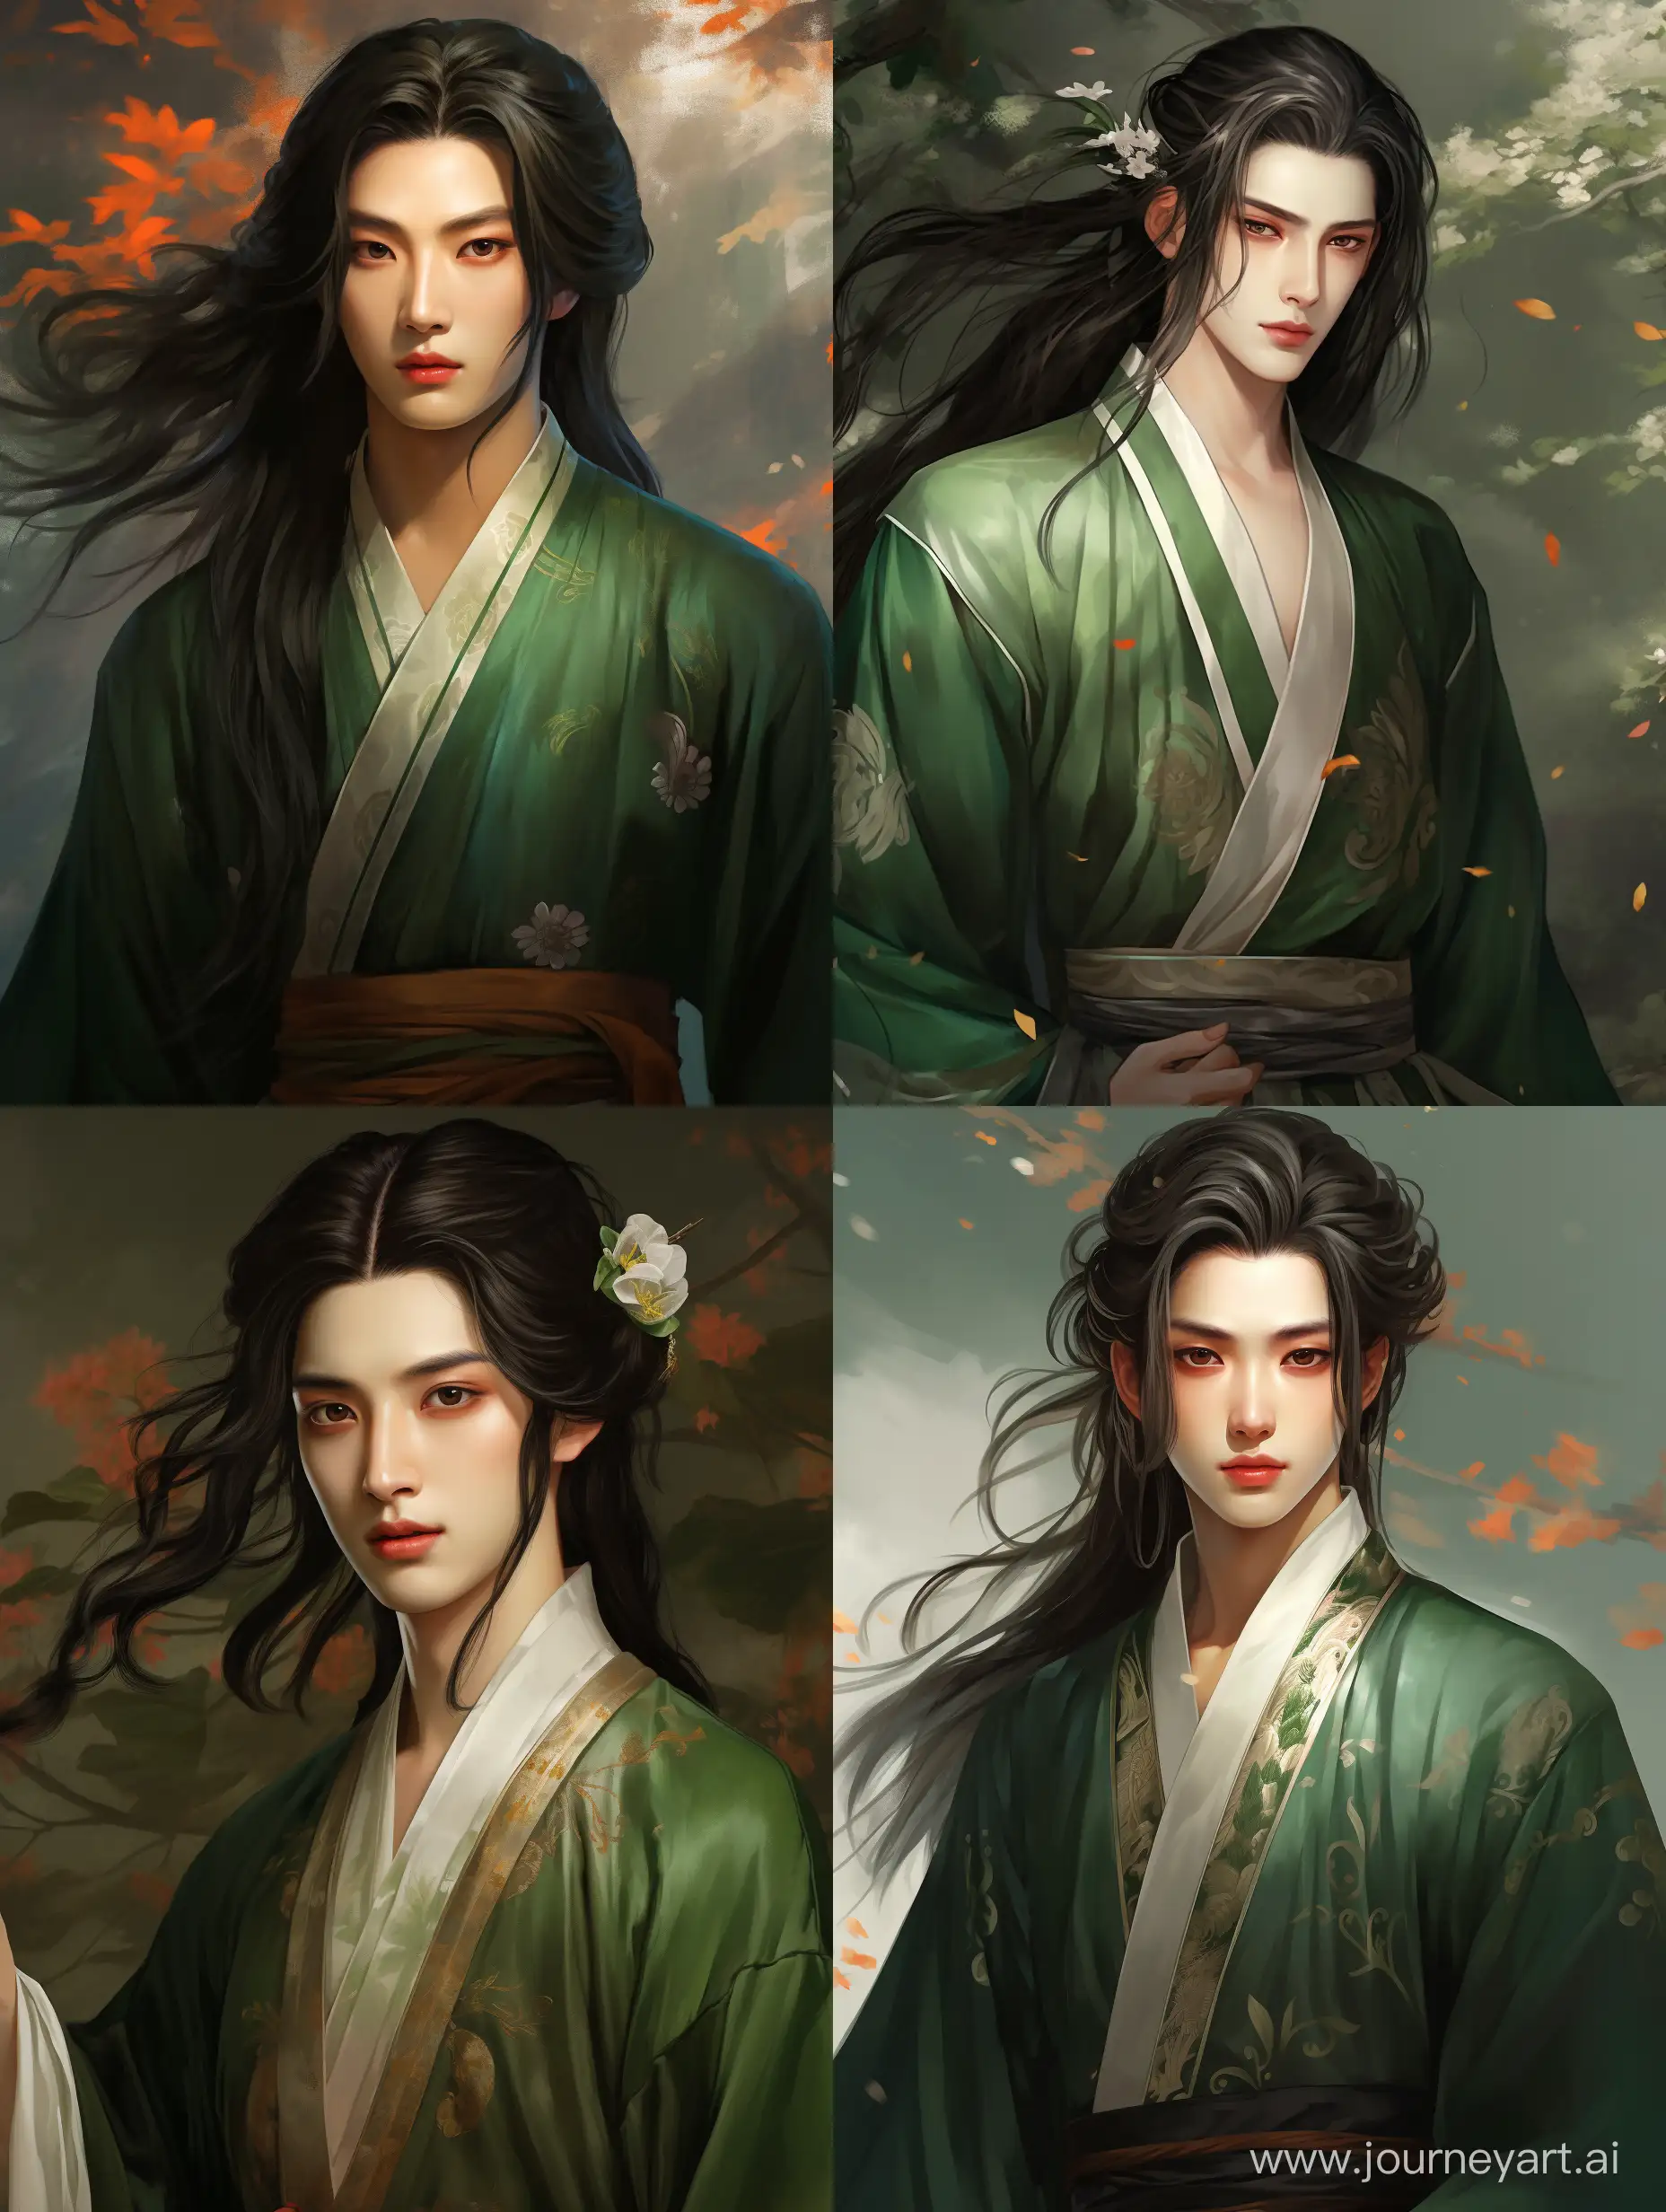 Мужчина 20 лет, с длинными, черными волосами и каре-ерасными глазами. Одетый в зеленые, праздничные одежды в древне-китайском стиле. Высокого роста с хорошим телосложением. 